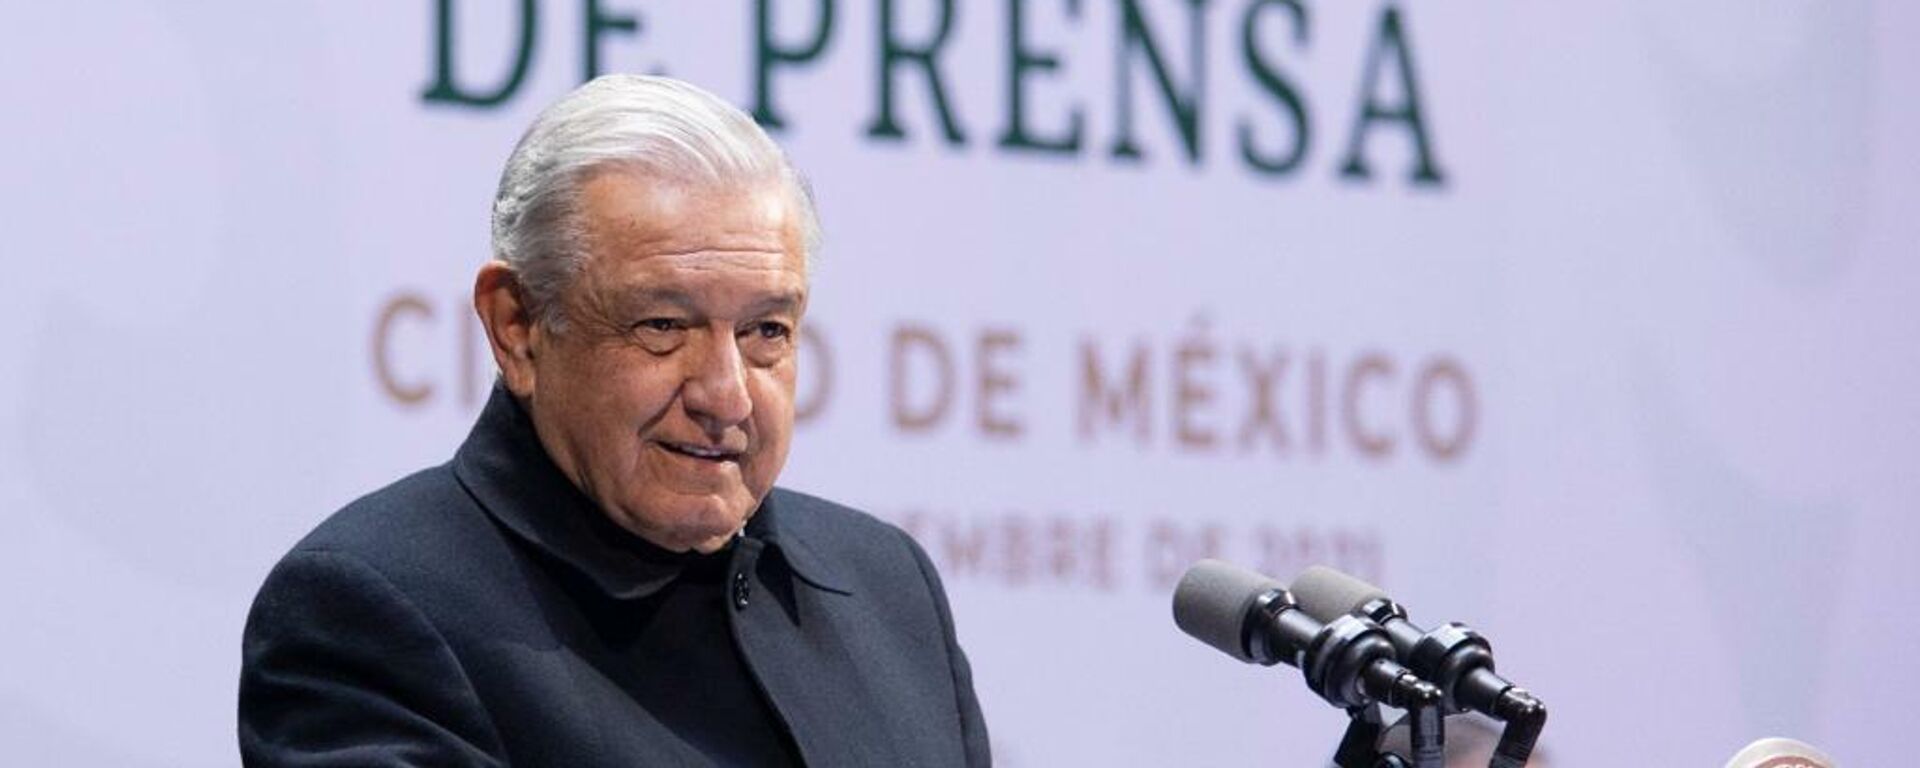 Andrés Manuel López Obrador, presidente de México - Sputnik Mundo, 1920, 01.12.2021